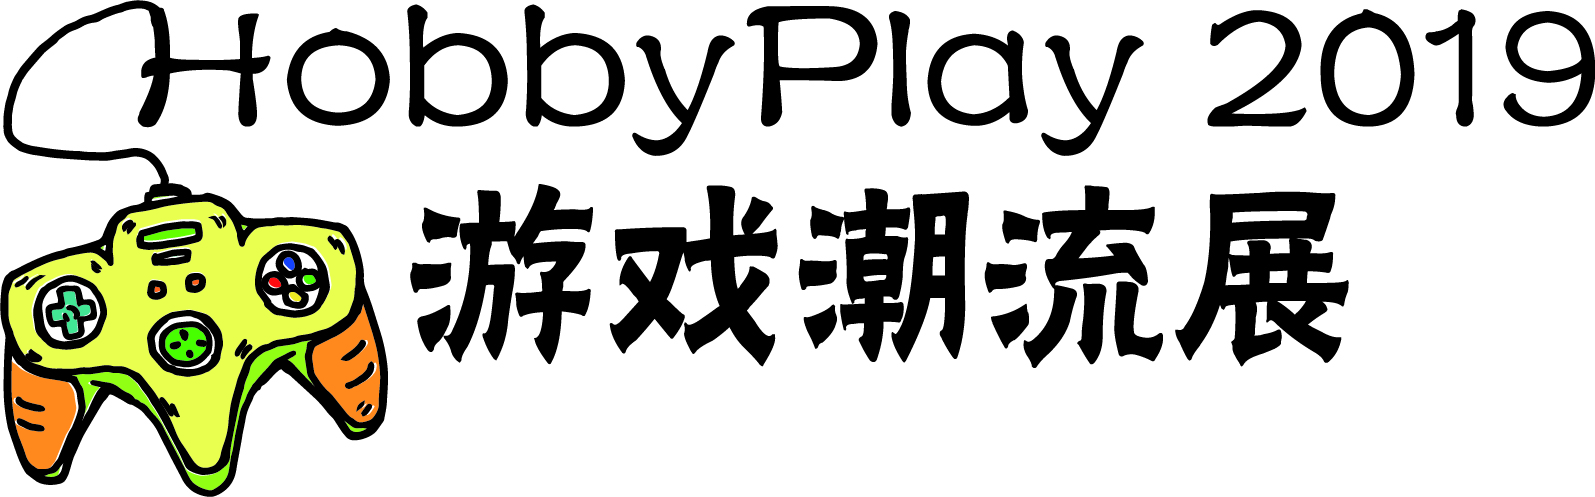 潮流游戏展logo.jpg